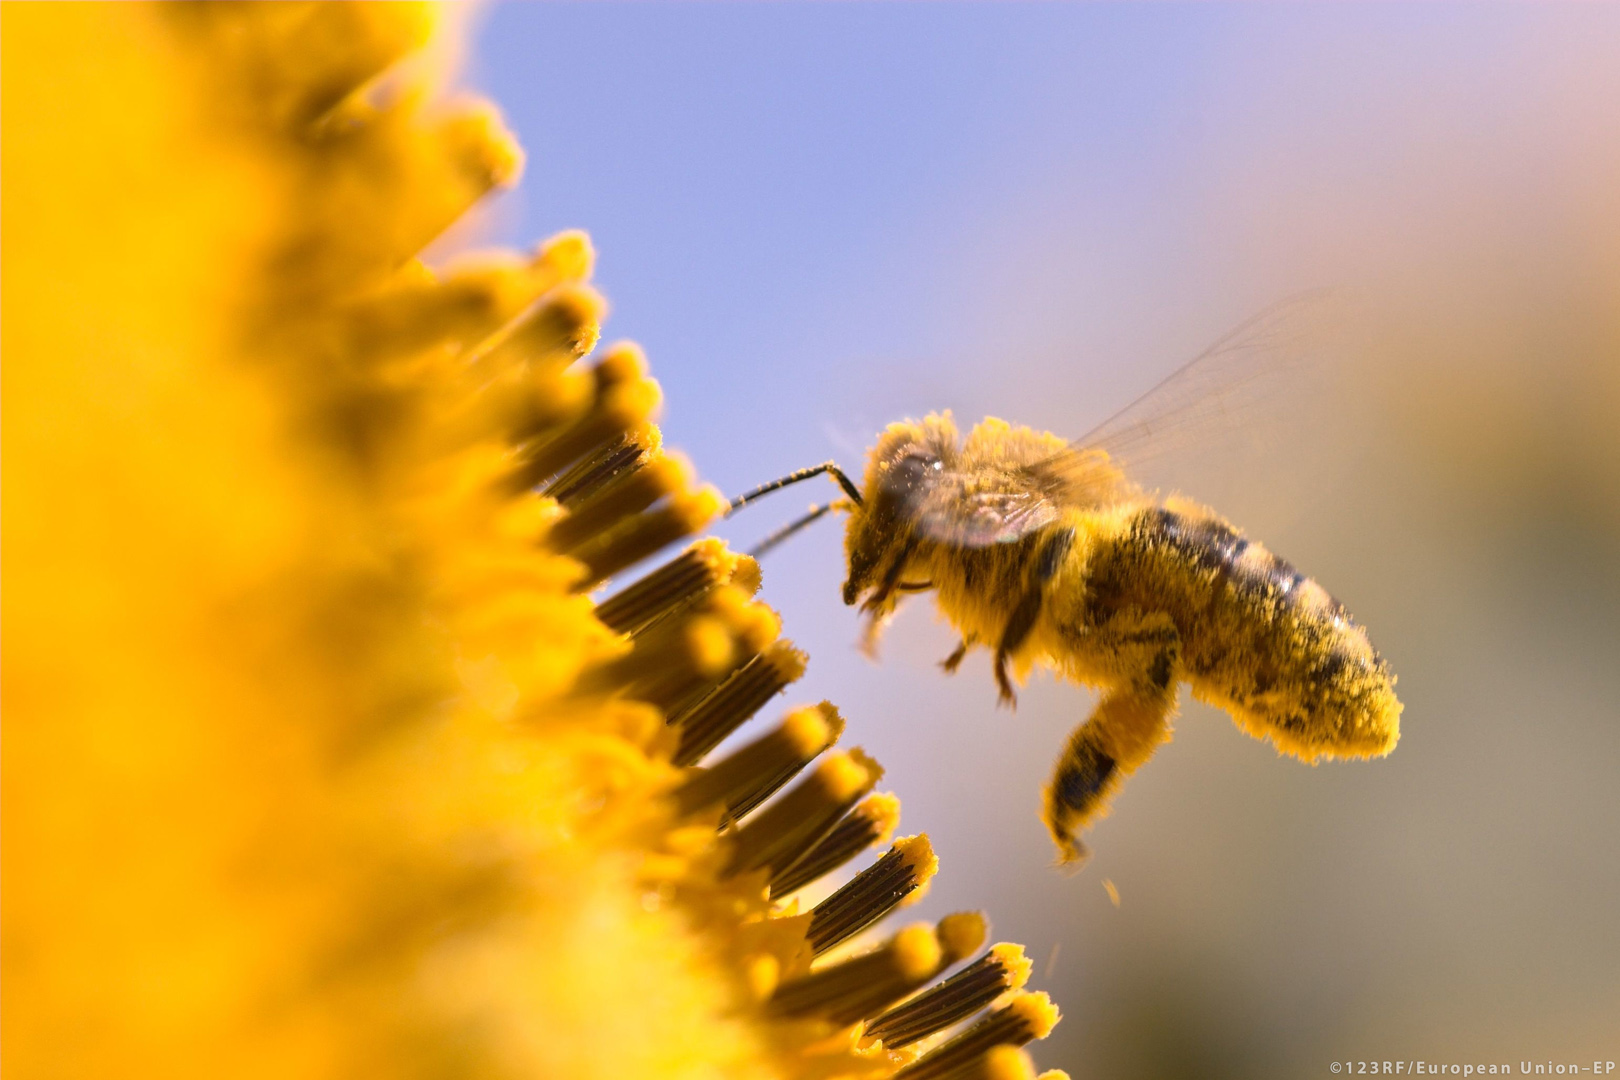 Bitės ir kiti vabzdžiai apdulkintojai yra būtini mūsų ekosistemoms ir biologinei įvairovei | europa.eu nuotr.